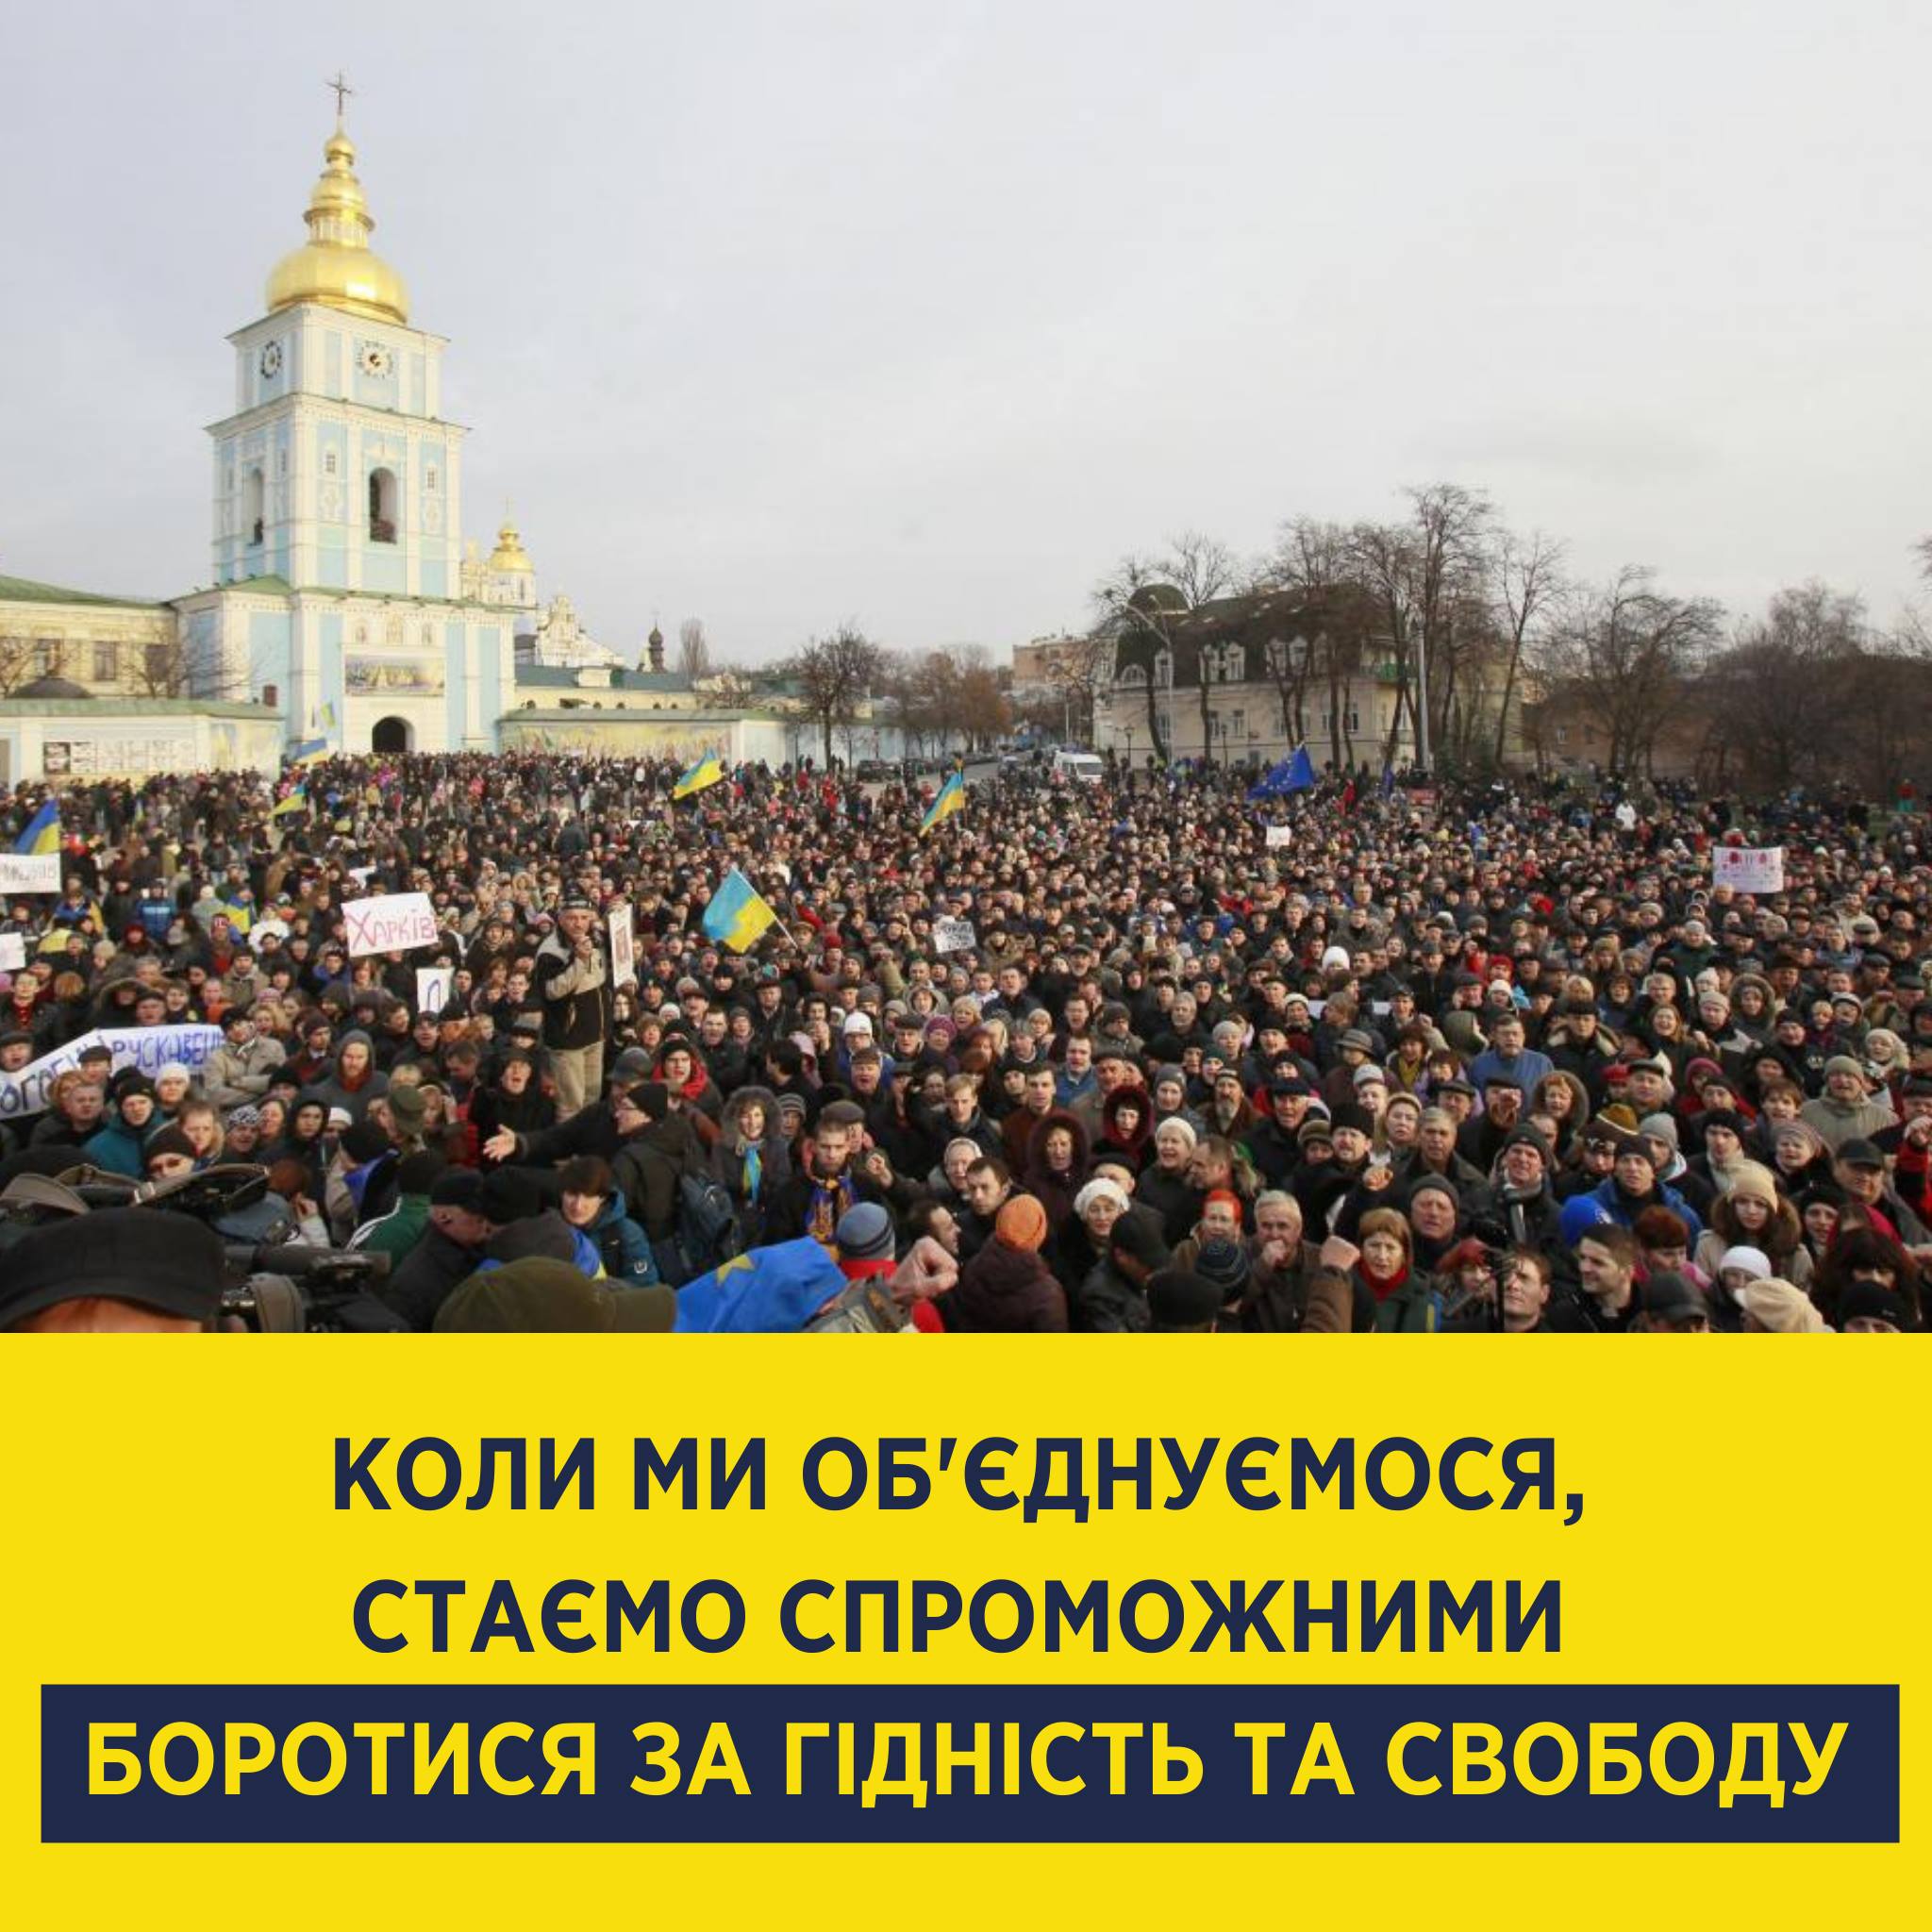 27 ноября 2013. Майдан 1 декабря 2013. Ноябрь 2013 Украина.